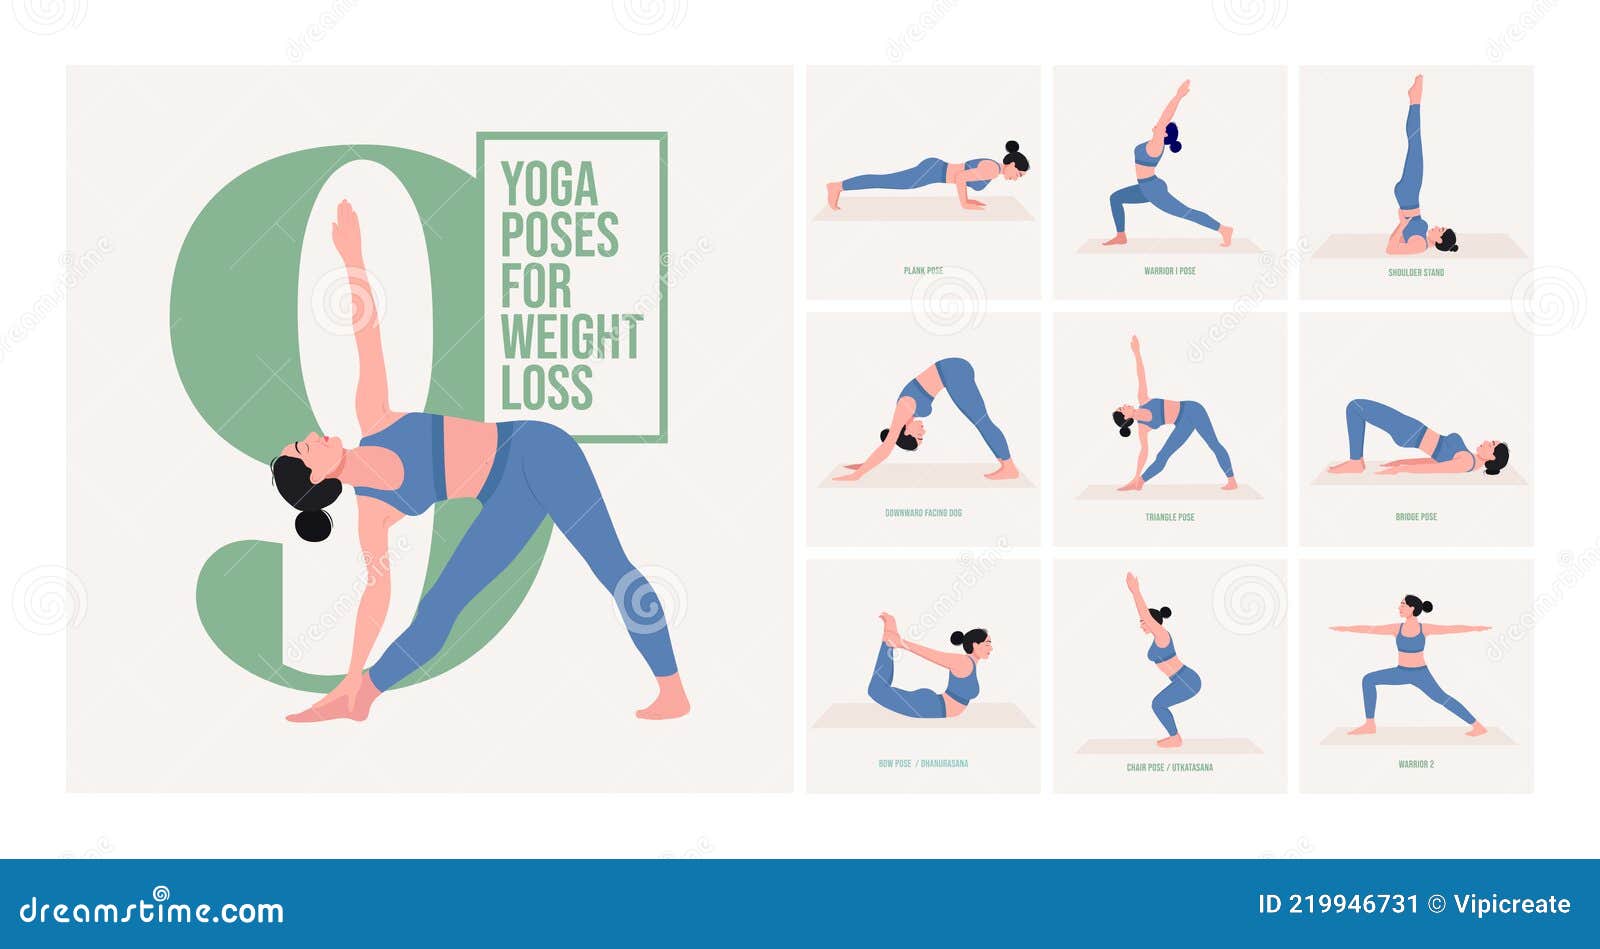 Power Vinyasa Yoga for Weight Loss | Weight Loss Vinyasa Yoga